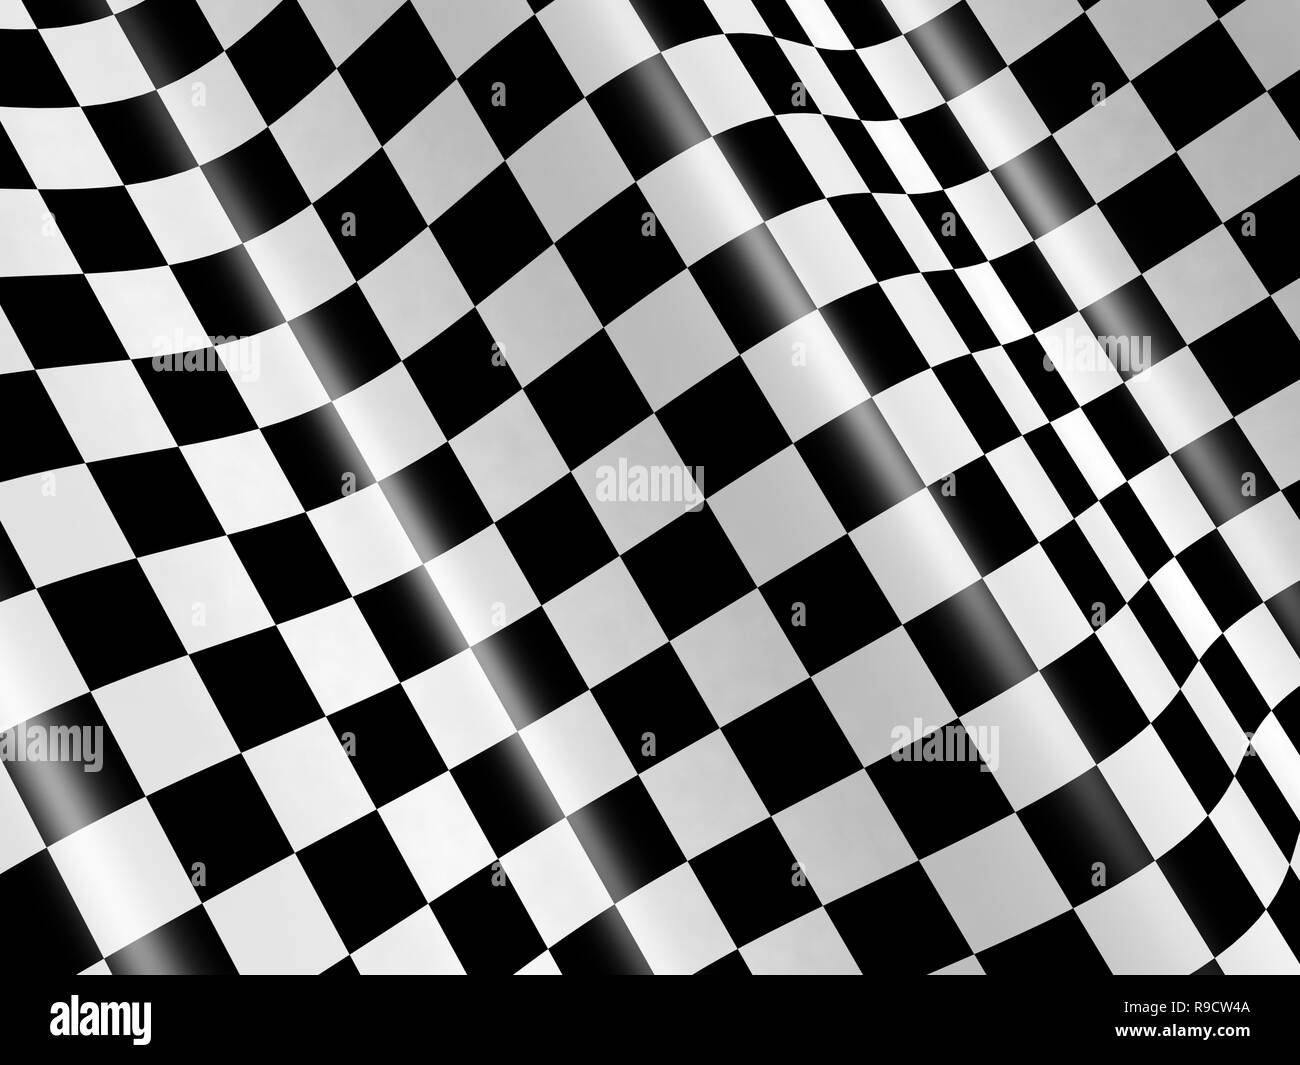 50 Free Checkered Flag  Finish Images  Pixabay